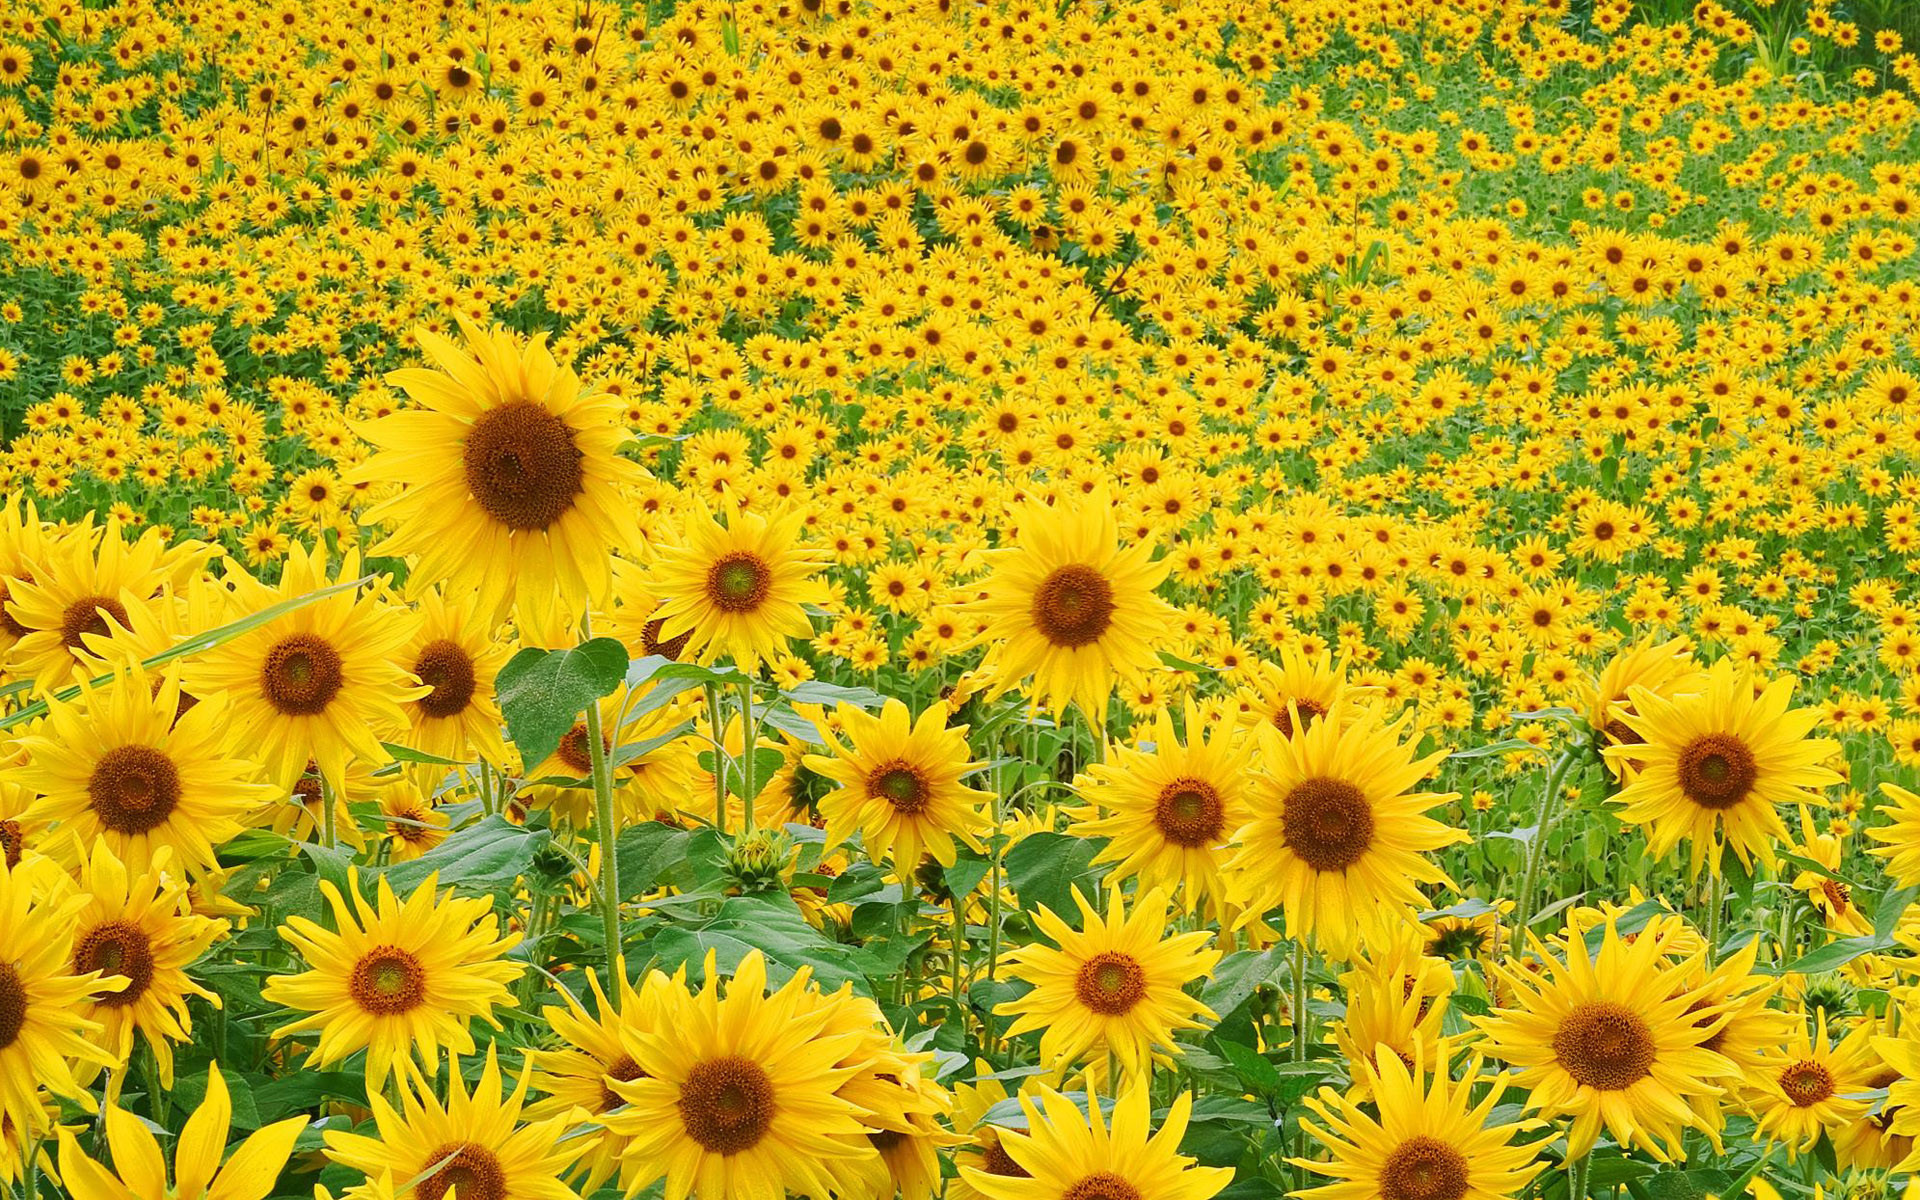 Sunflower Wallpaper Desktop 67 Pictures